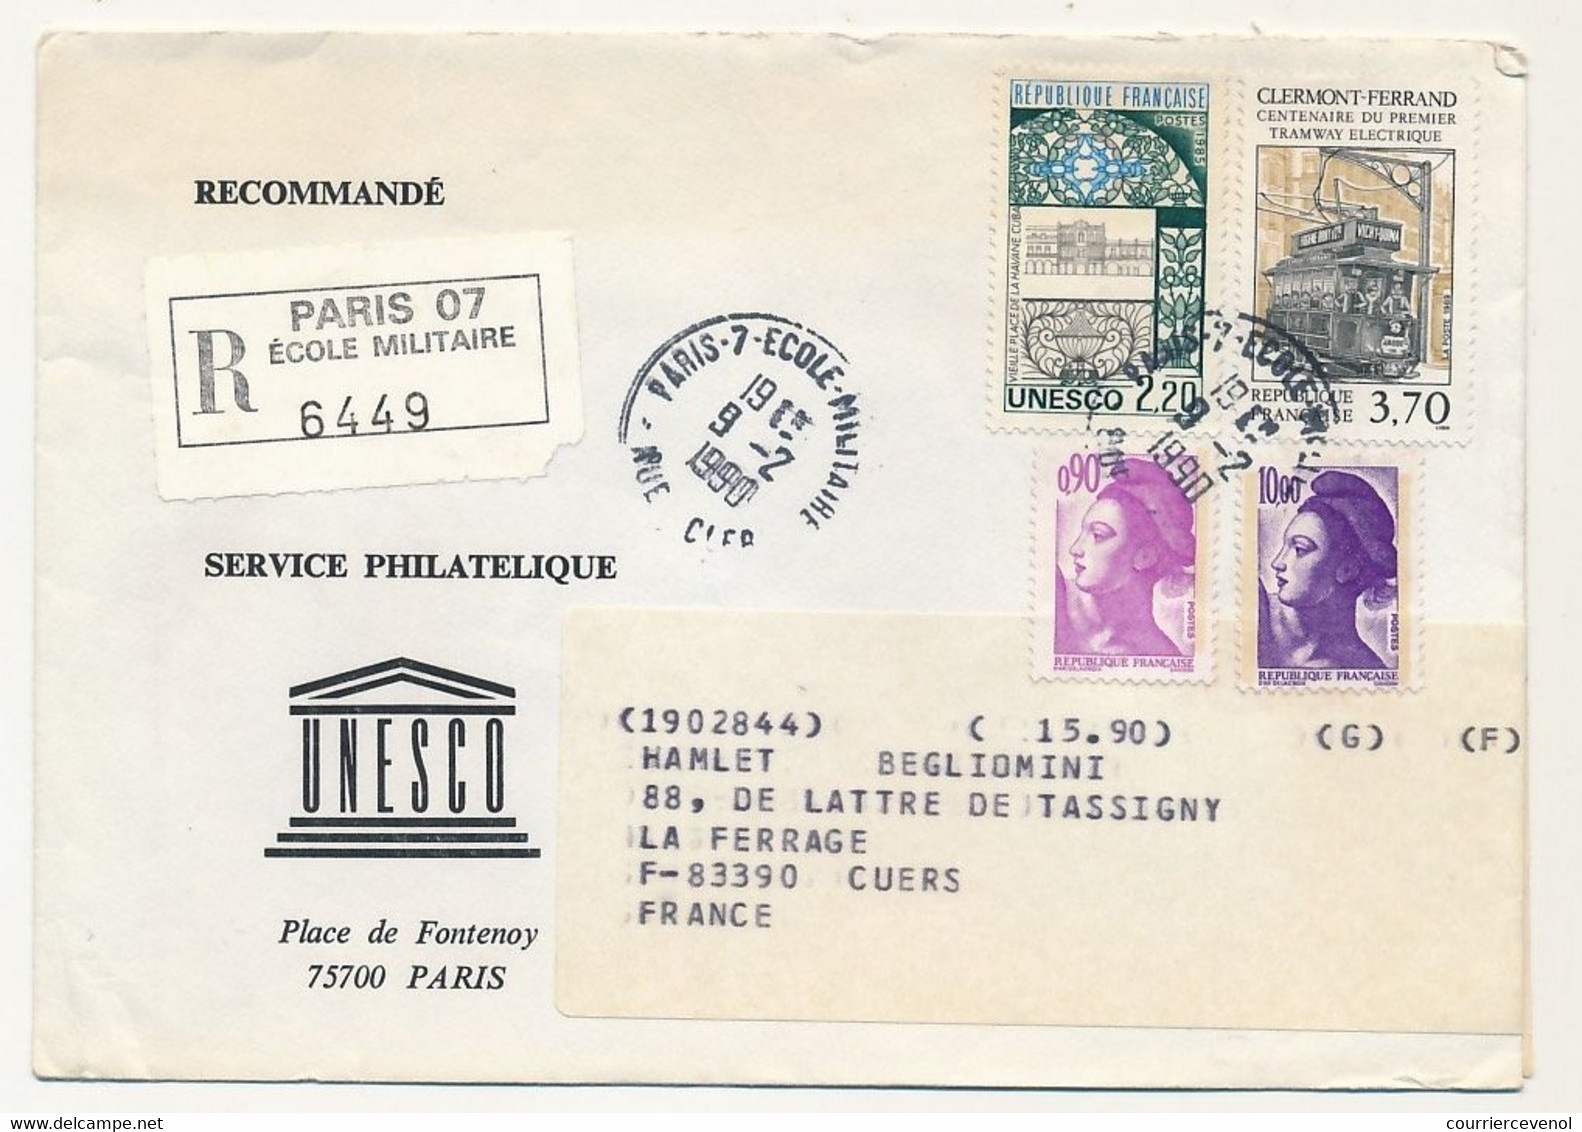 FRANCE - UNESCO - 8 Enveloppes Service Philatélique Unesco Avec Timbres De Service - Obl Paris 7 Rue Clerc - 1989/90 - Brieven & Documenten